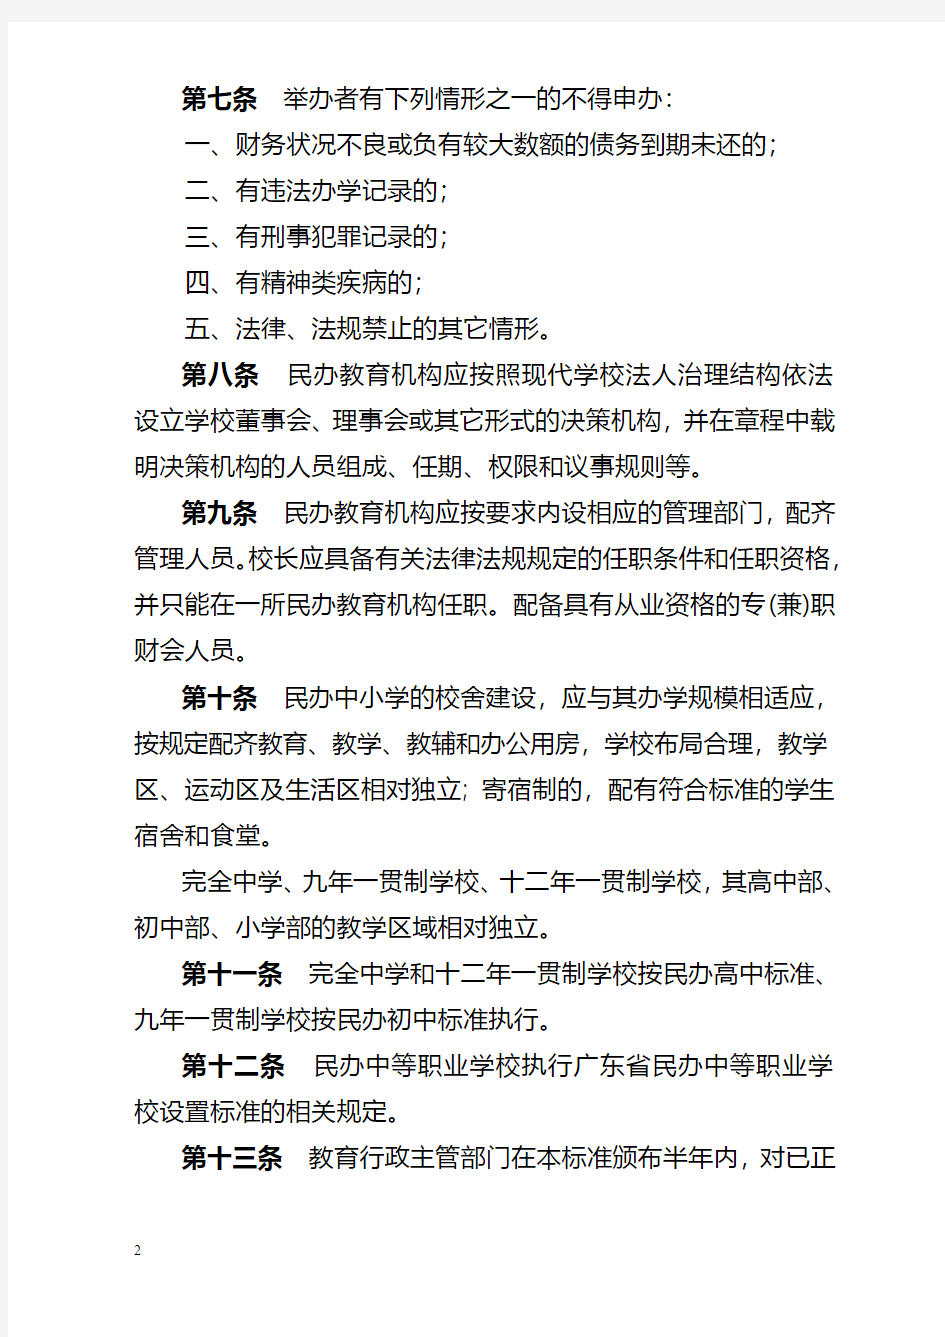 深圳市民办教育机构设置标准(试行)